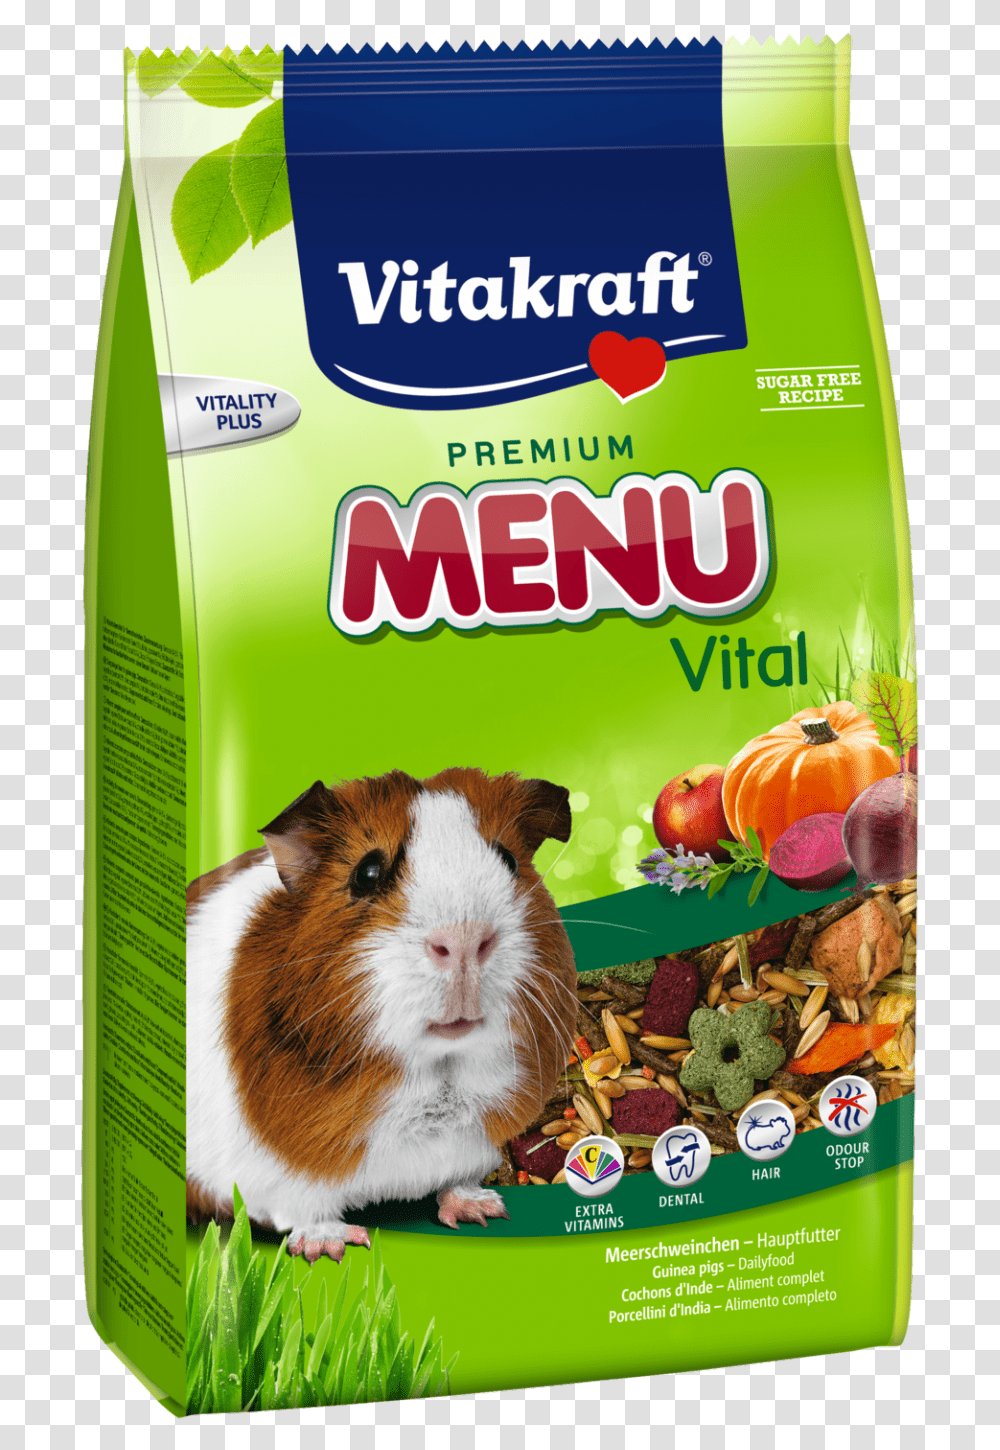 Vitakraft Premium Menu Vital Guinea Pig 400 G Buy Online Vitakraft Menu Vital Hamster, Label, Rat, Rodent Transparent Png